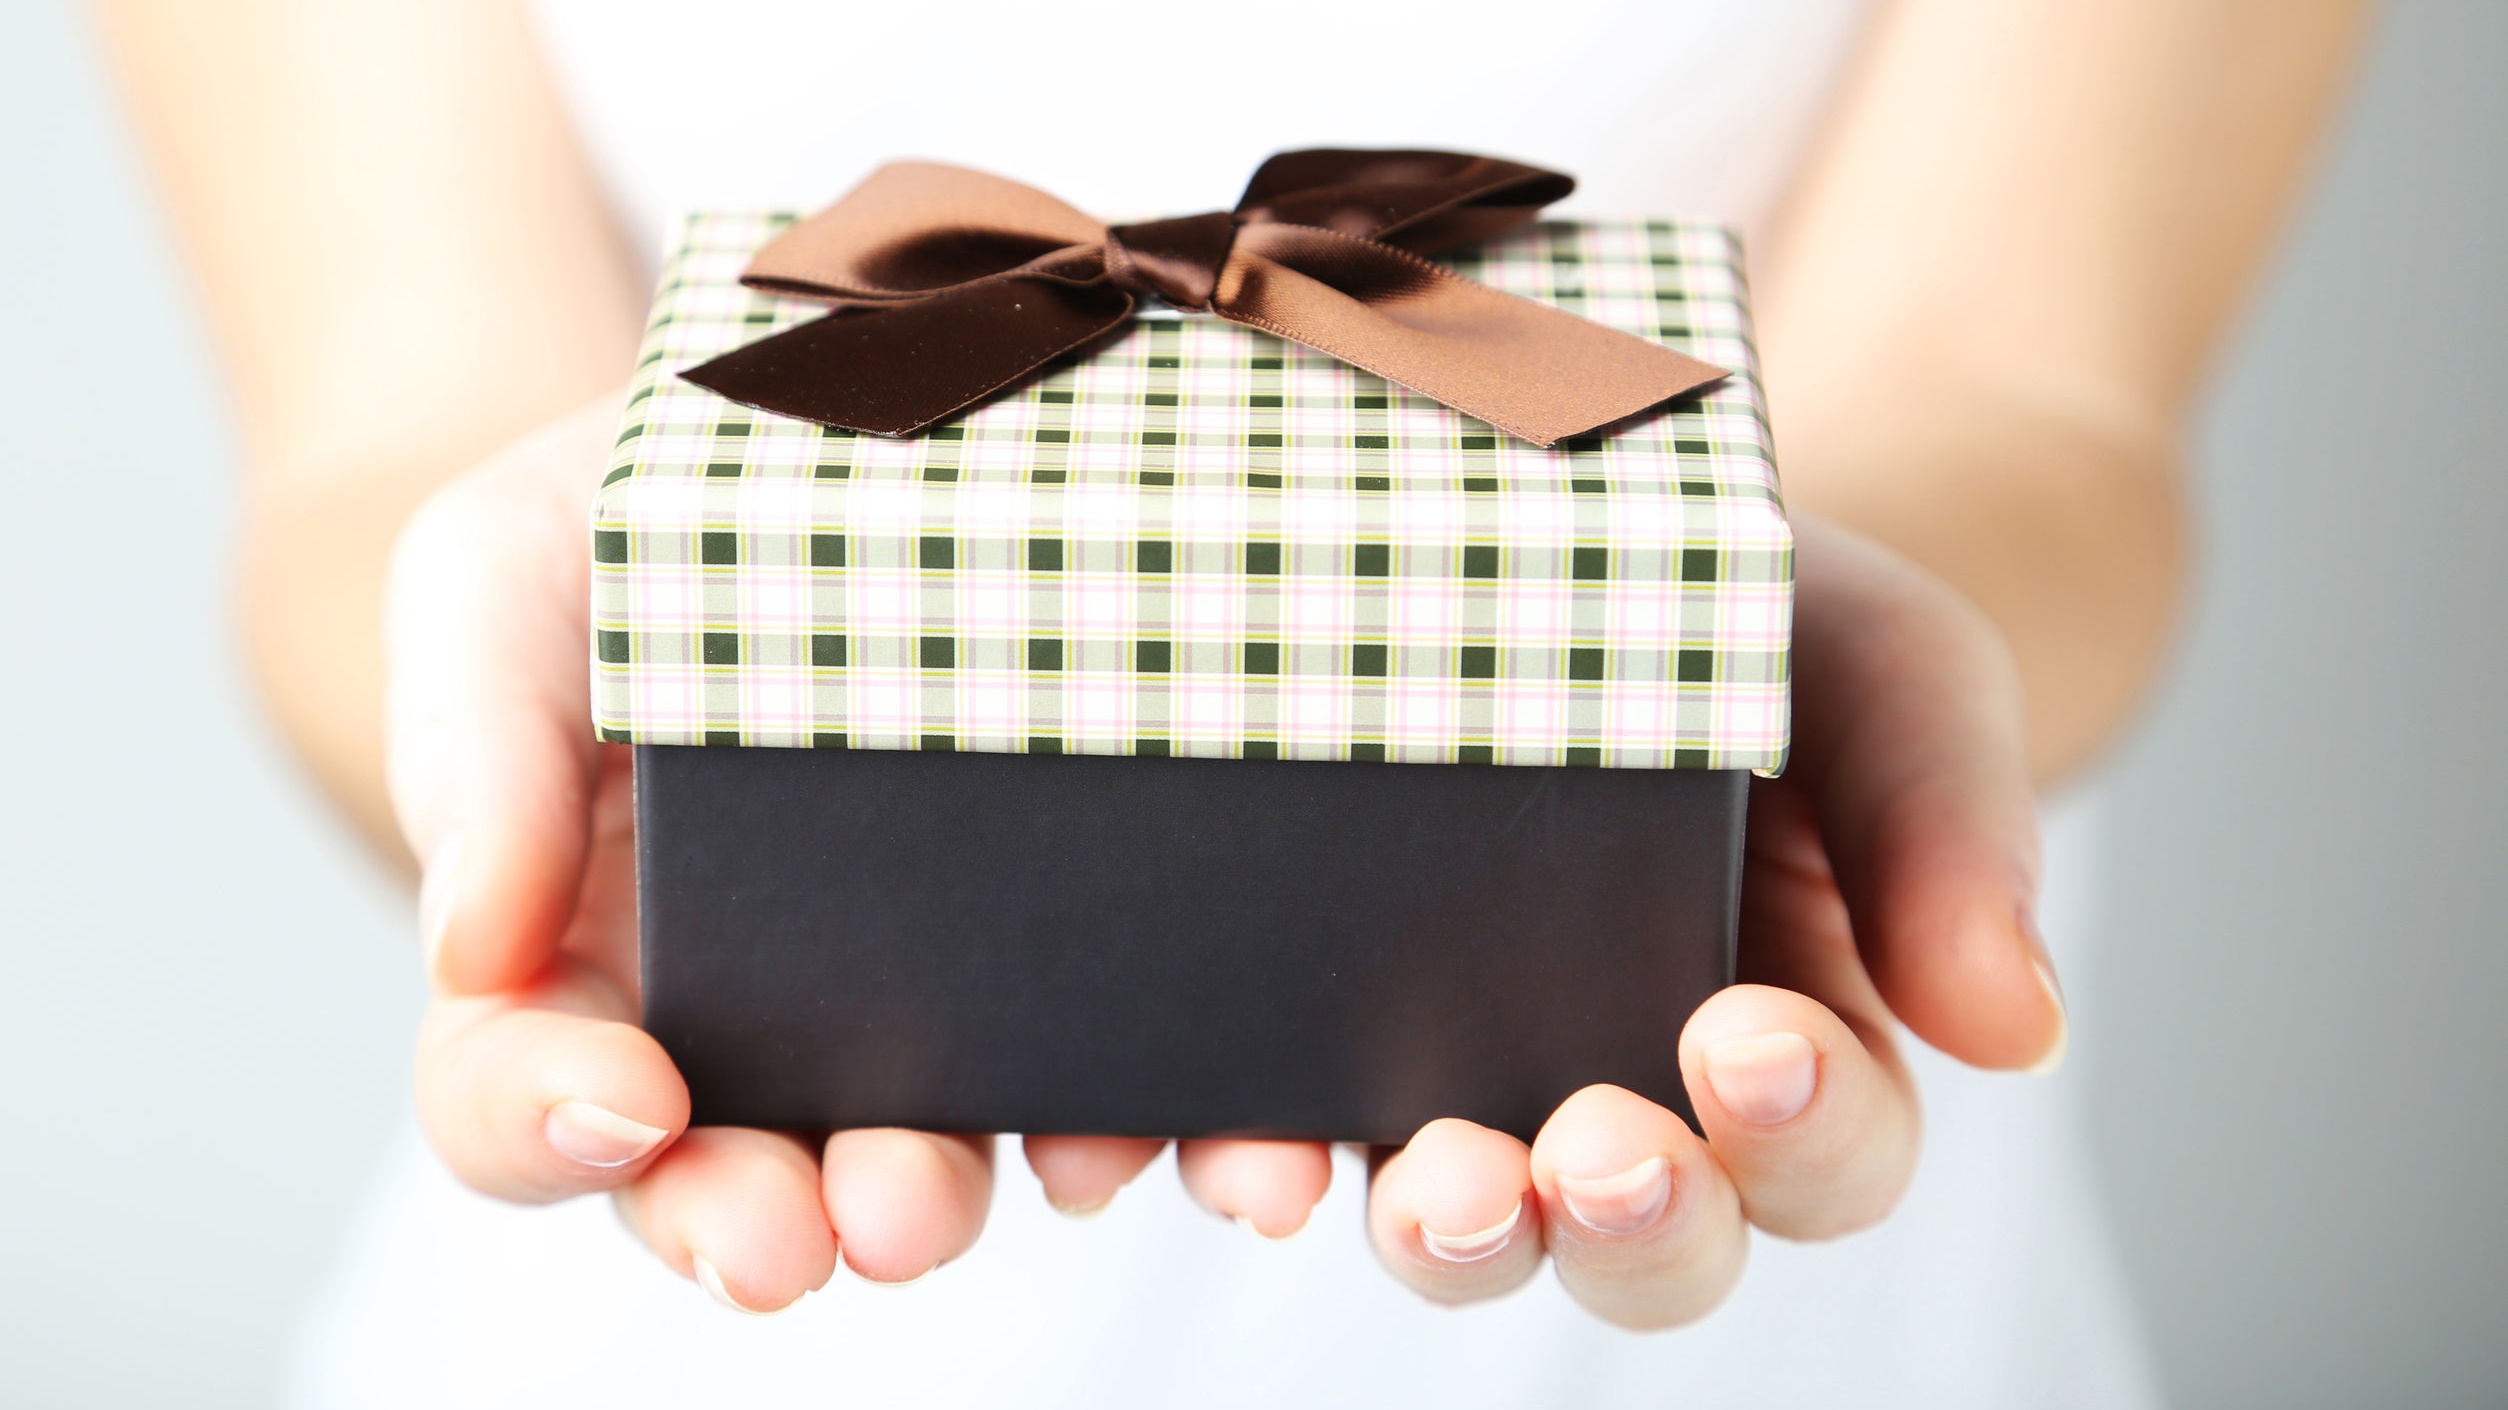 См сюрприз. Подарок в руках. Подарочная коробка "руки". Подарочная коробочка в руках. Подарок сюрприз.